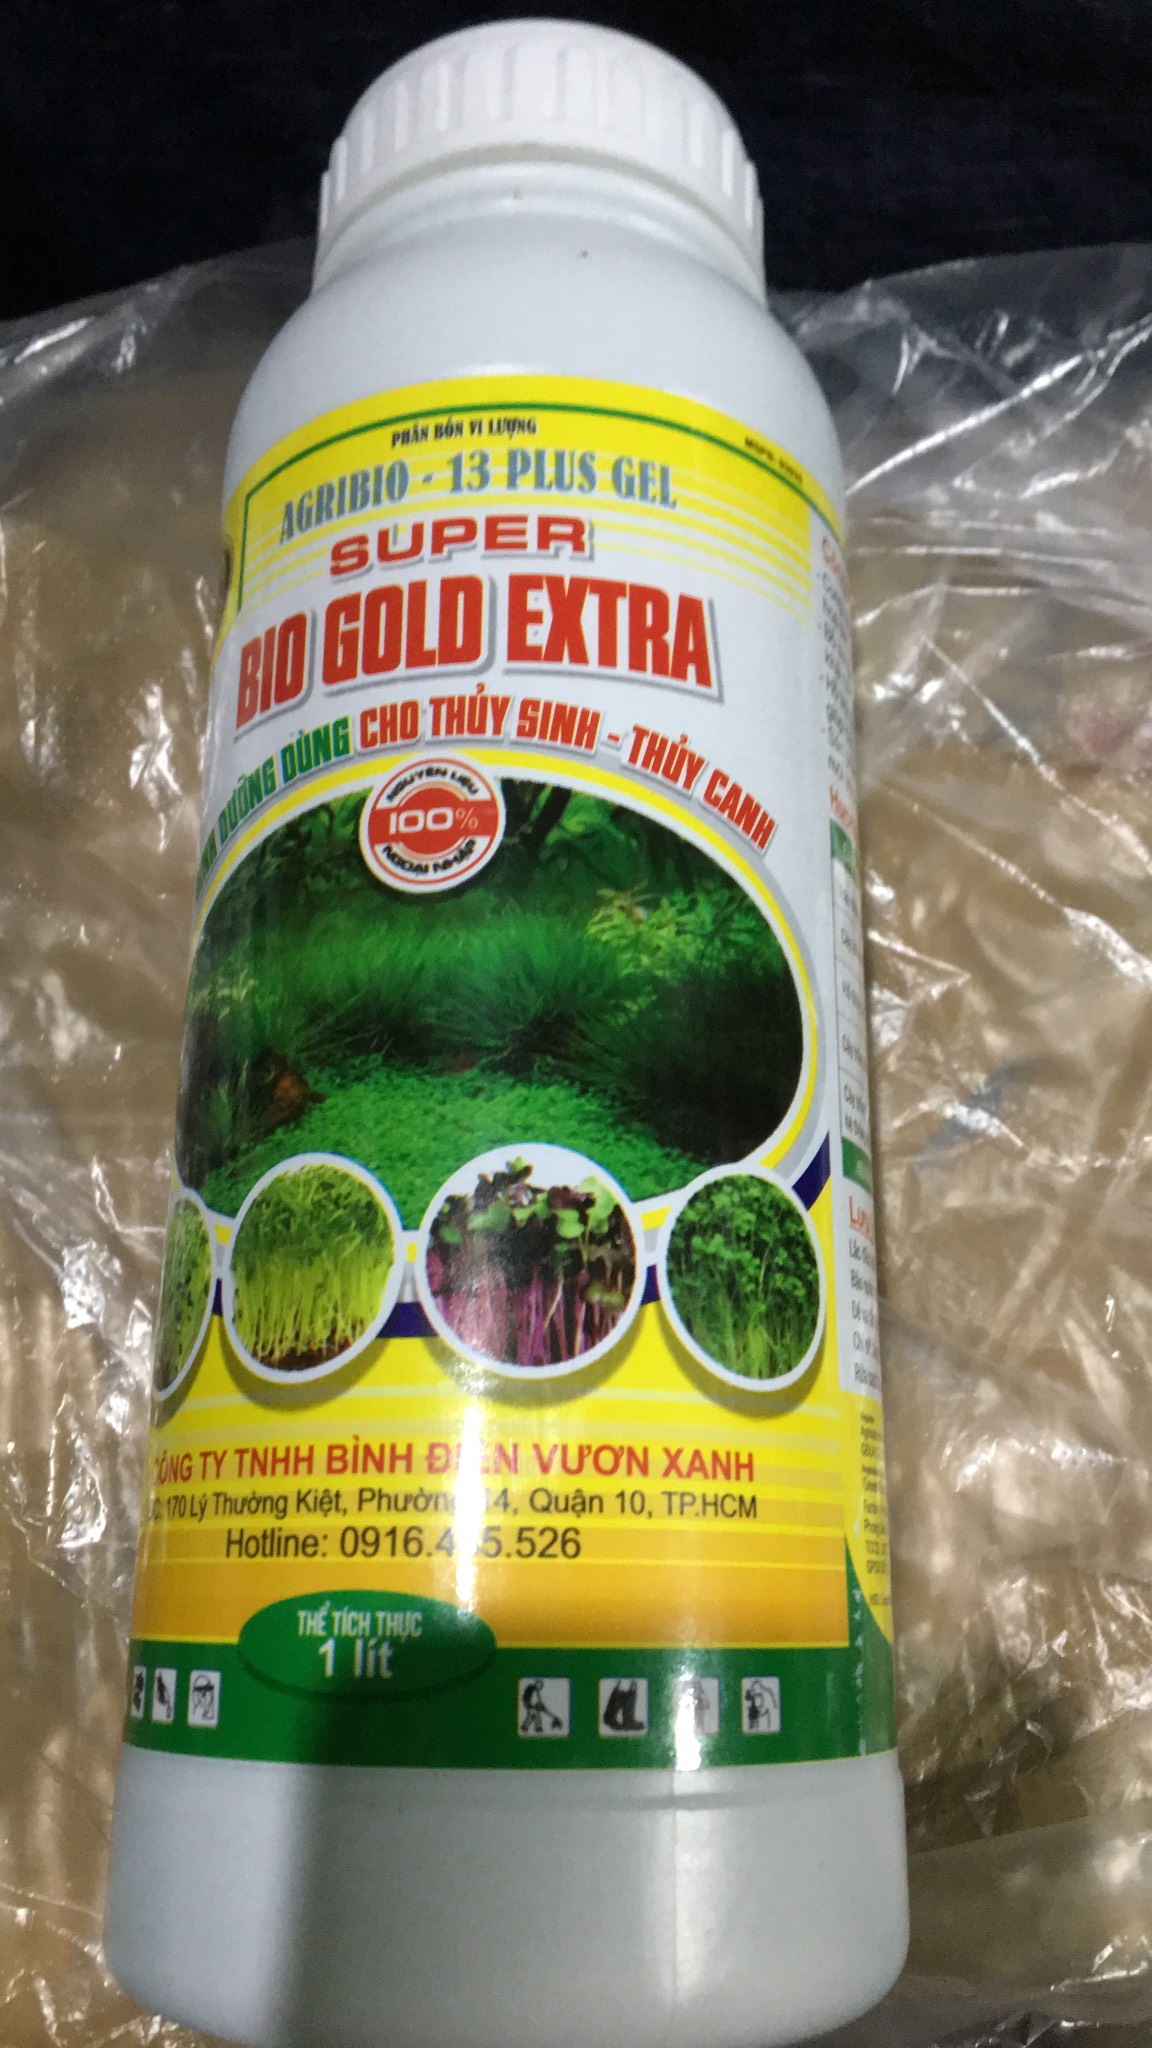 Dinh dưỡng dùng cho thủy sinh, thủy canh Super Bio Gold